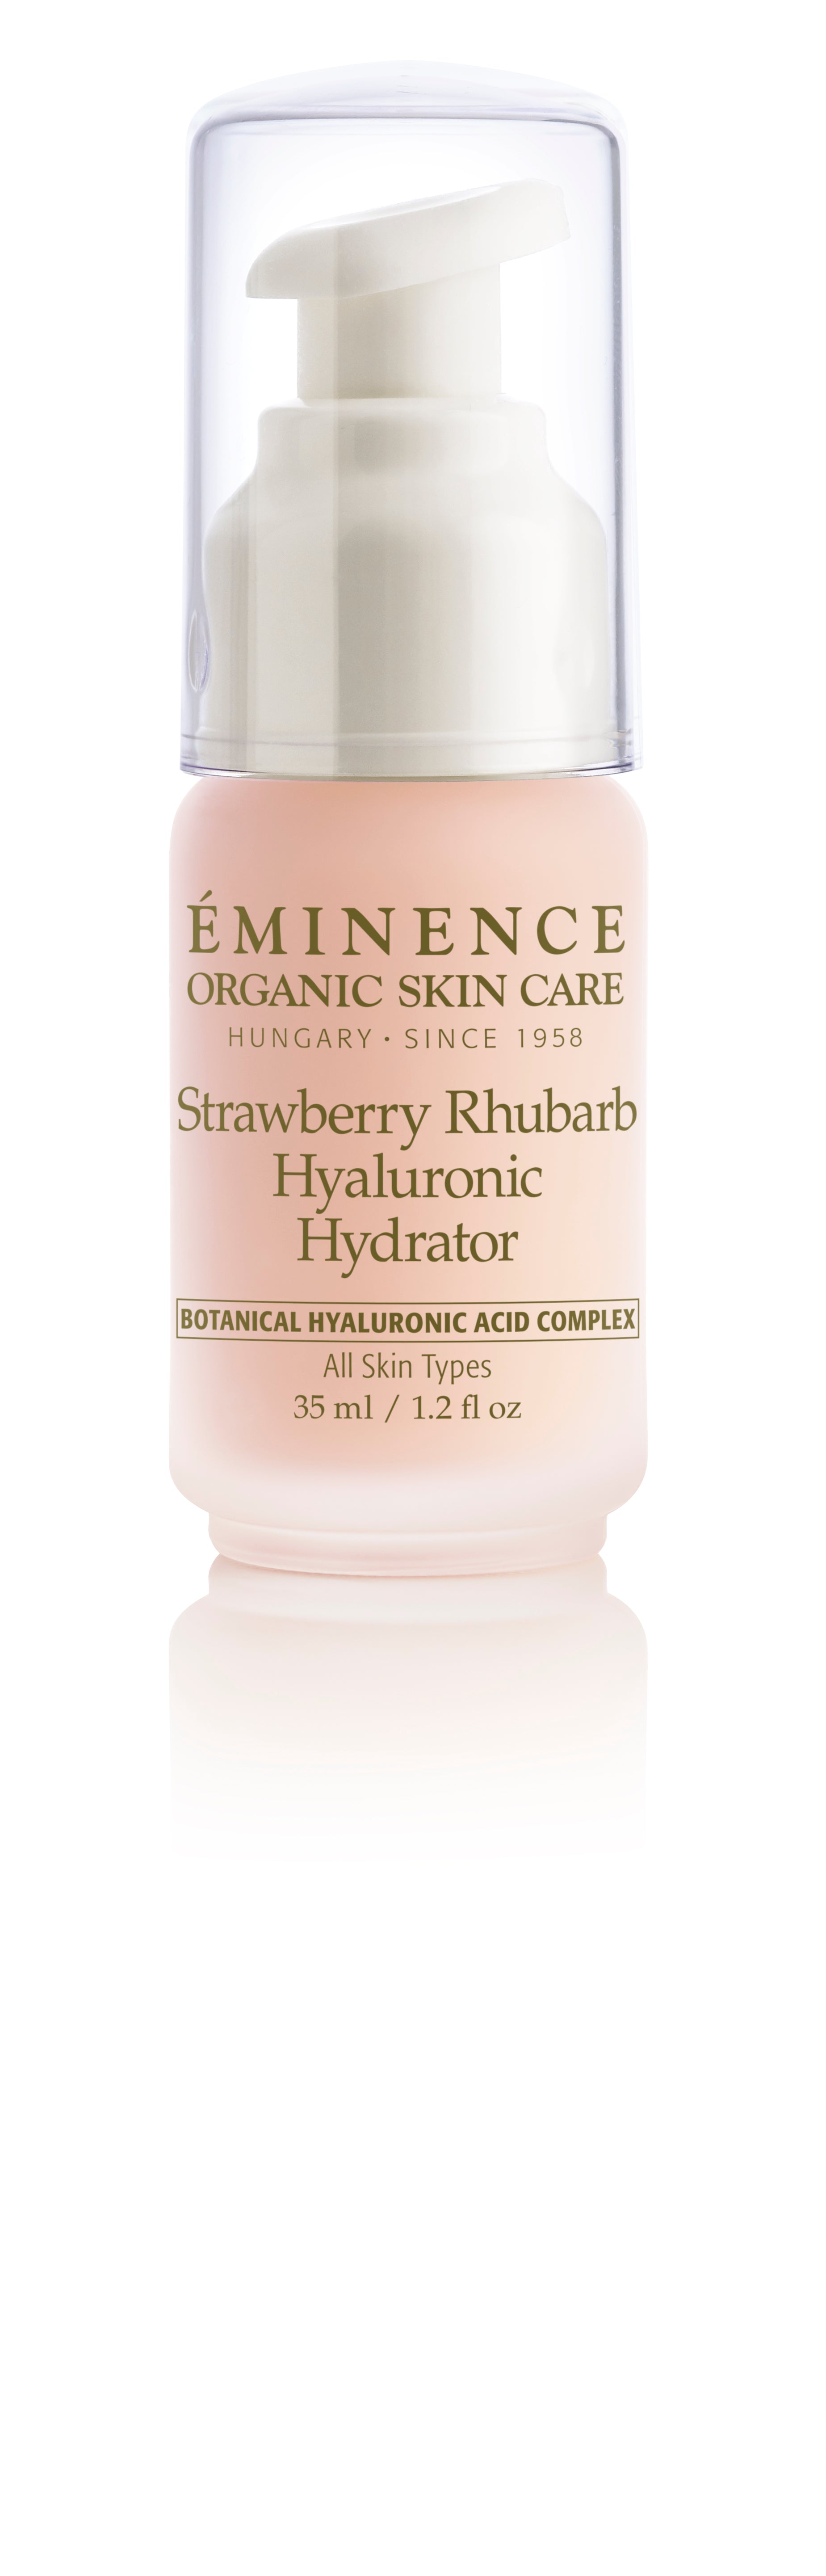 Strawberry Rhubarb Hyaluronic Hydrator